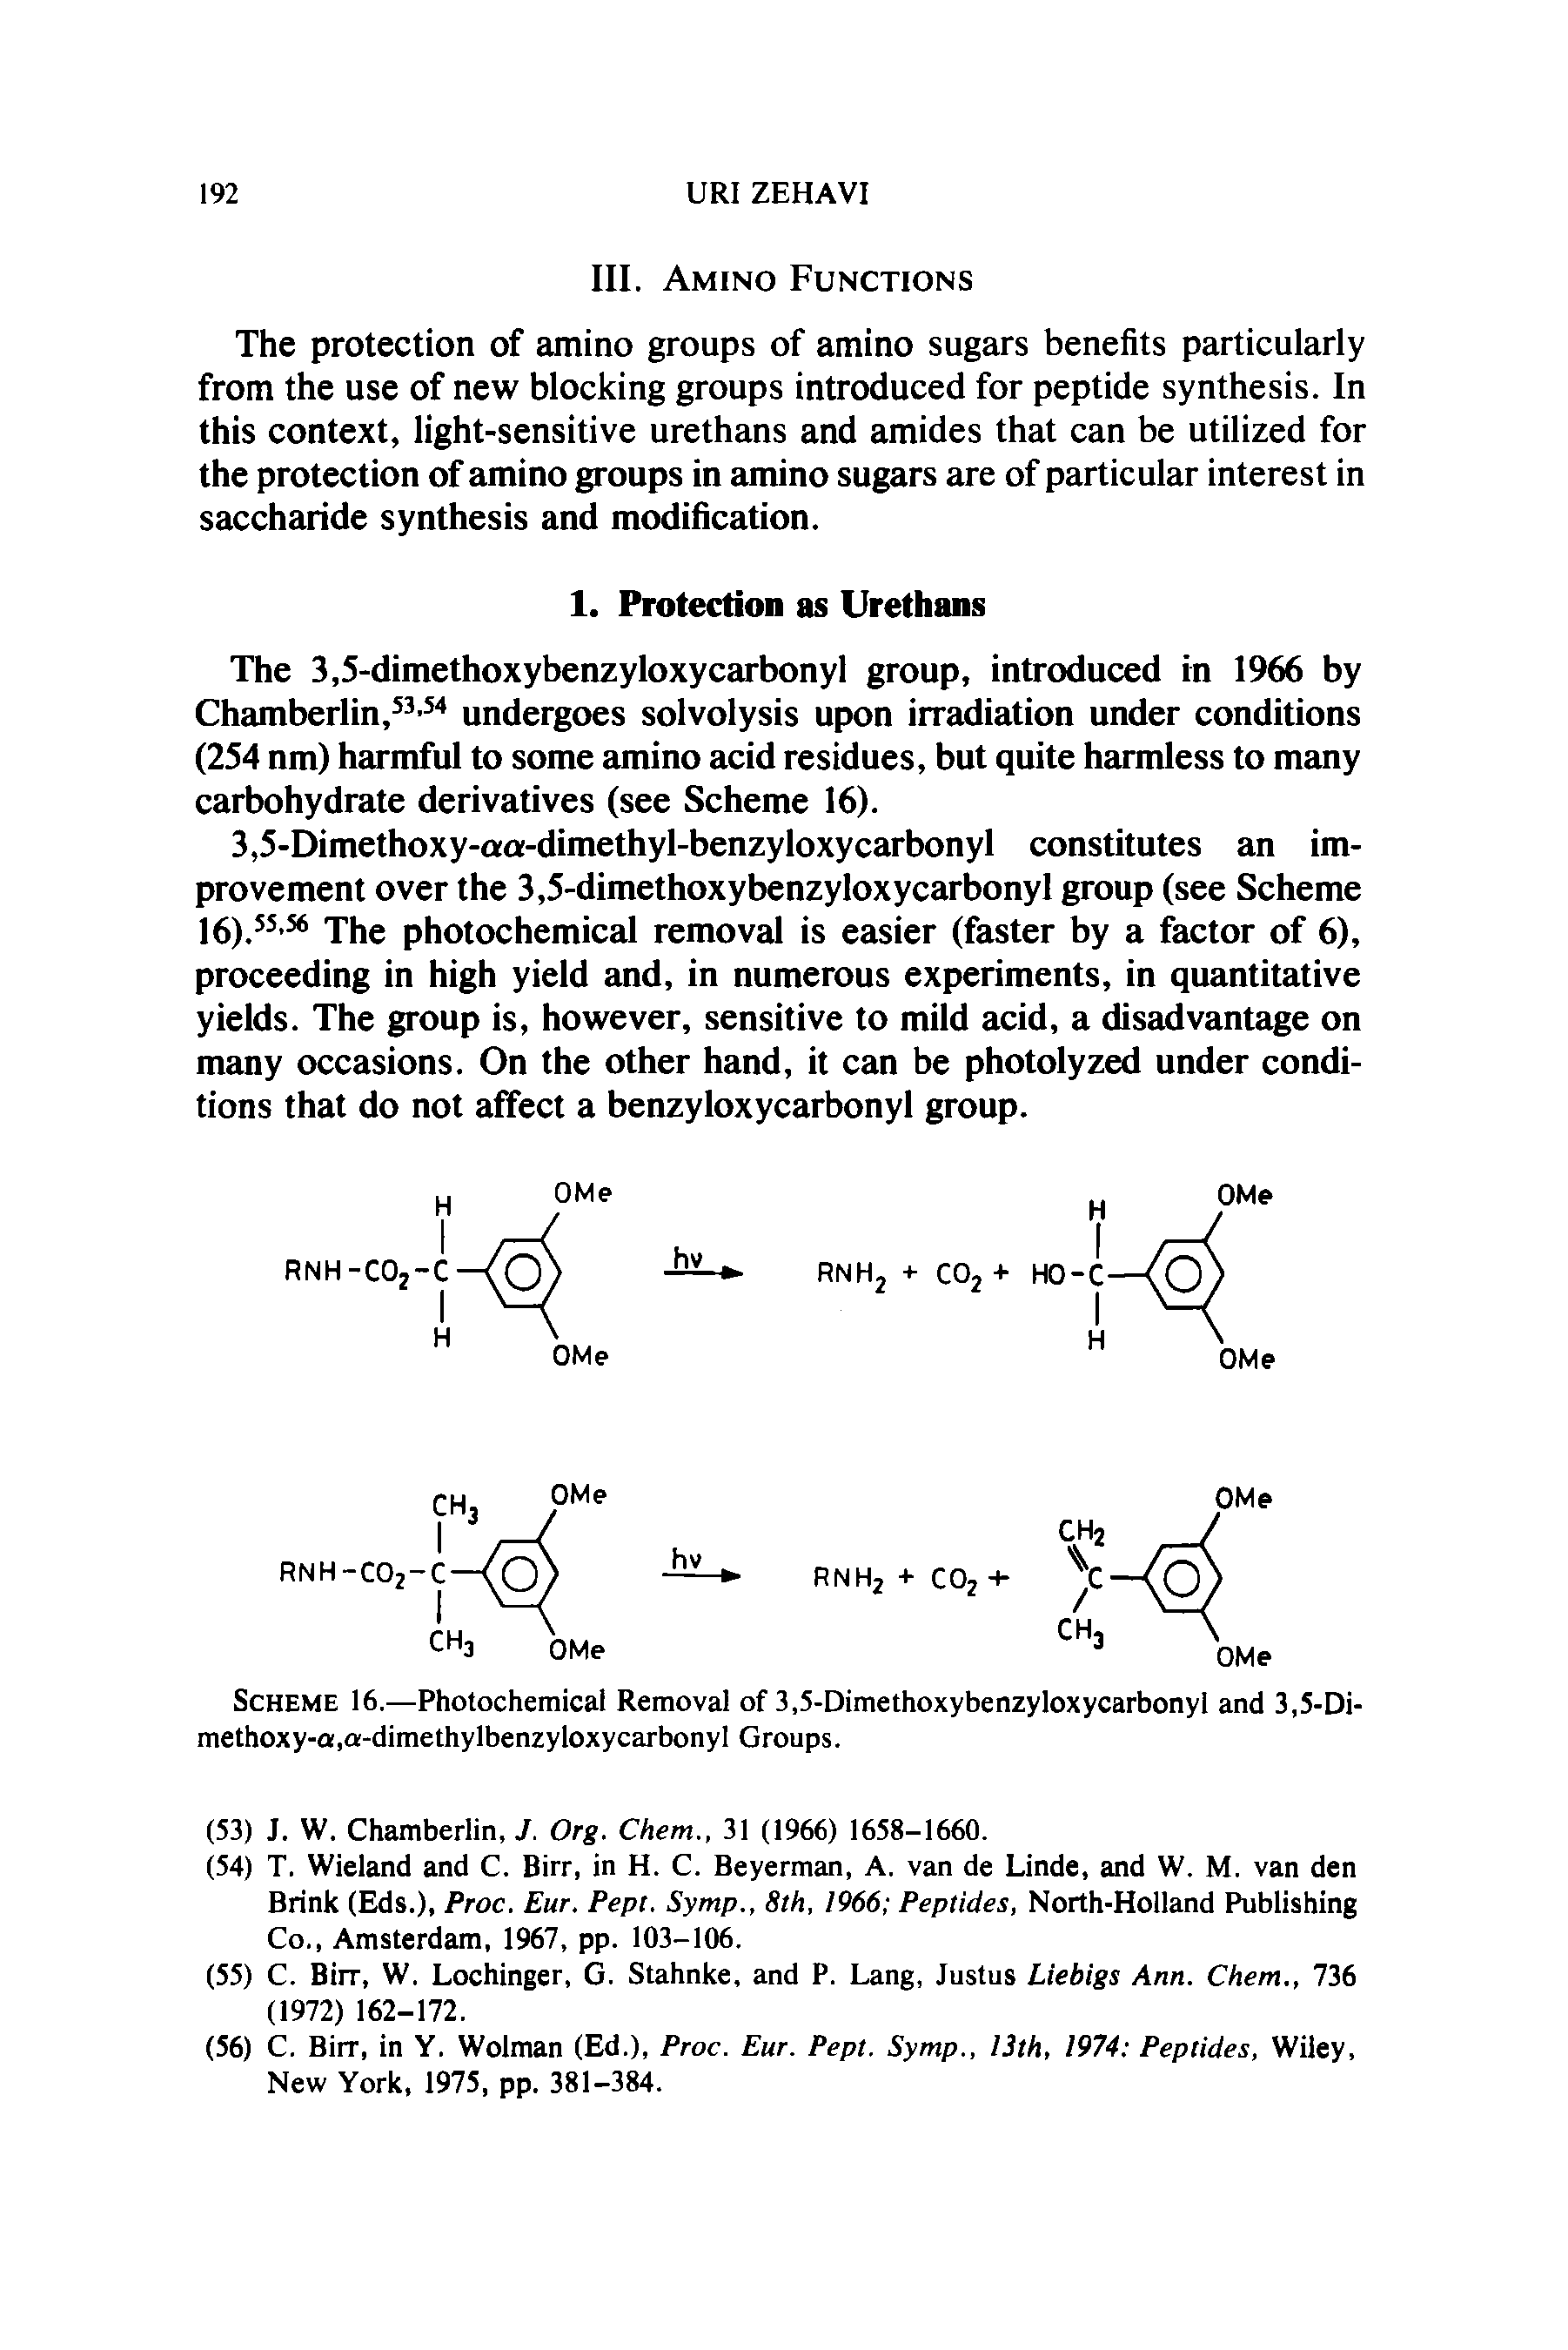 Scheme 16.—Photochemical Removal of 3,5-Dimethoxybenzyloxycarbonyl and 3,5-Di-methoxy-a,a-dimethylbenzyloxycarbonyl Groups.